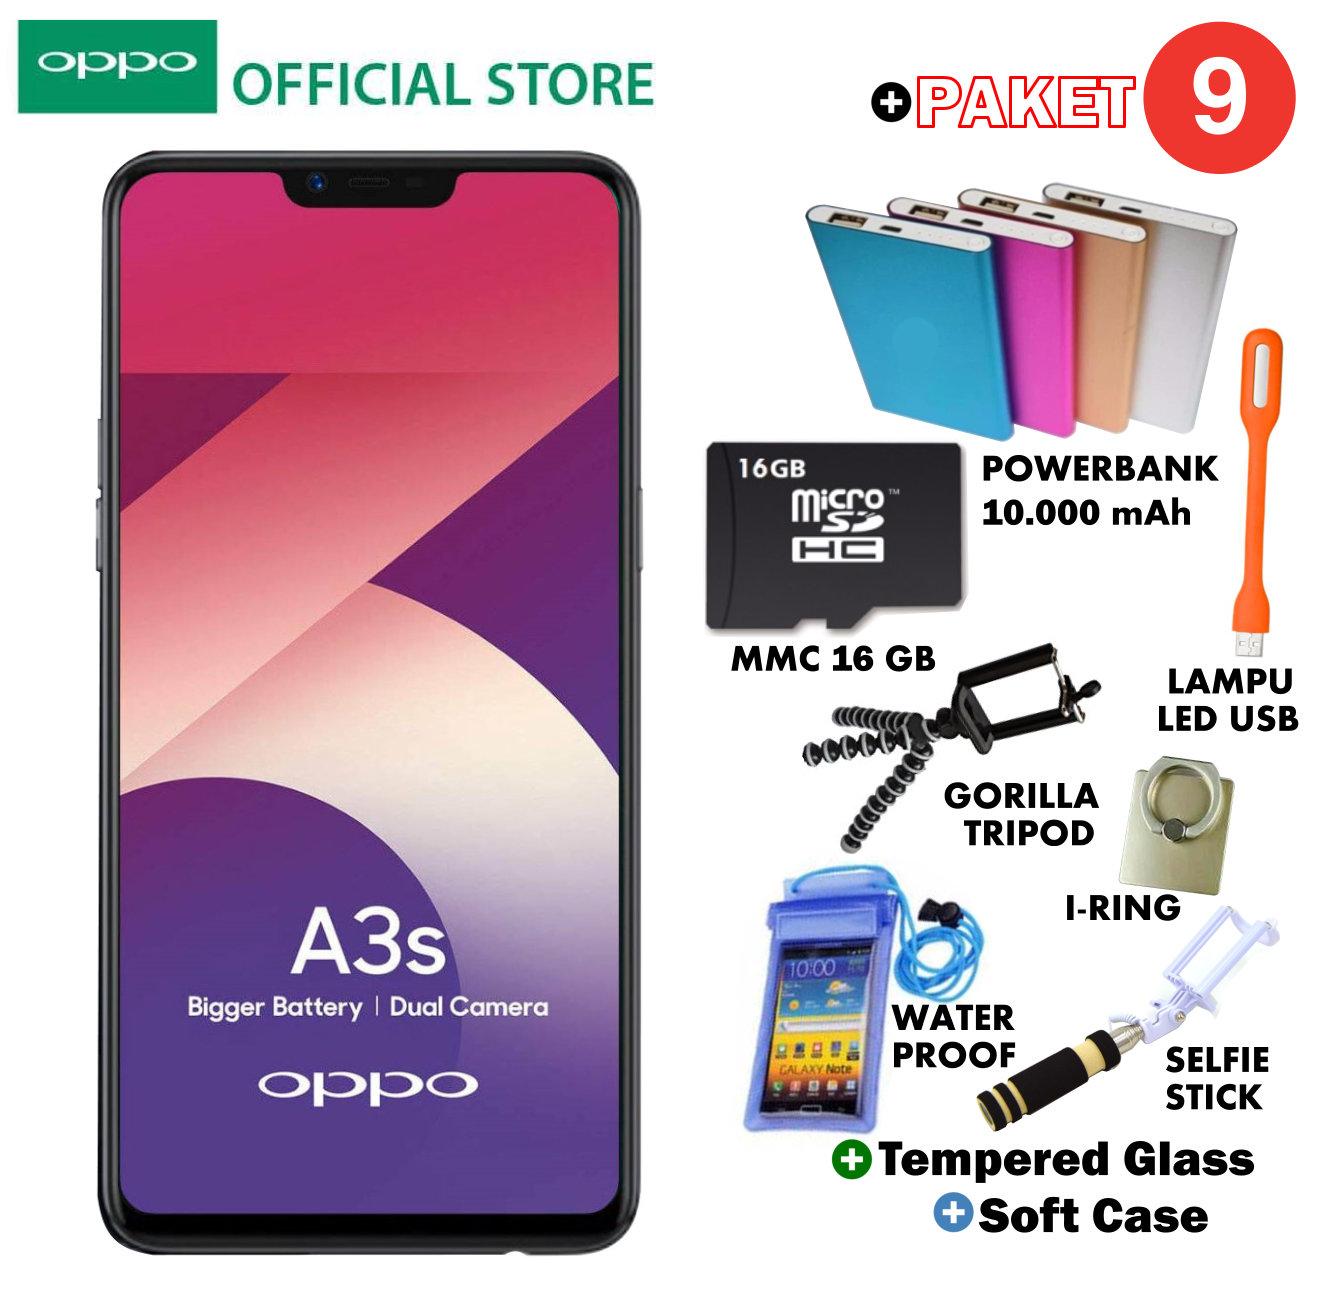 Oppo A3S 2GB/16GB - Plus 9 Paket Acc